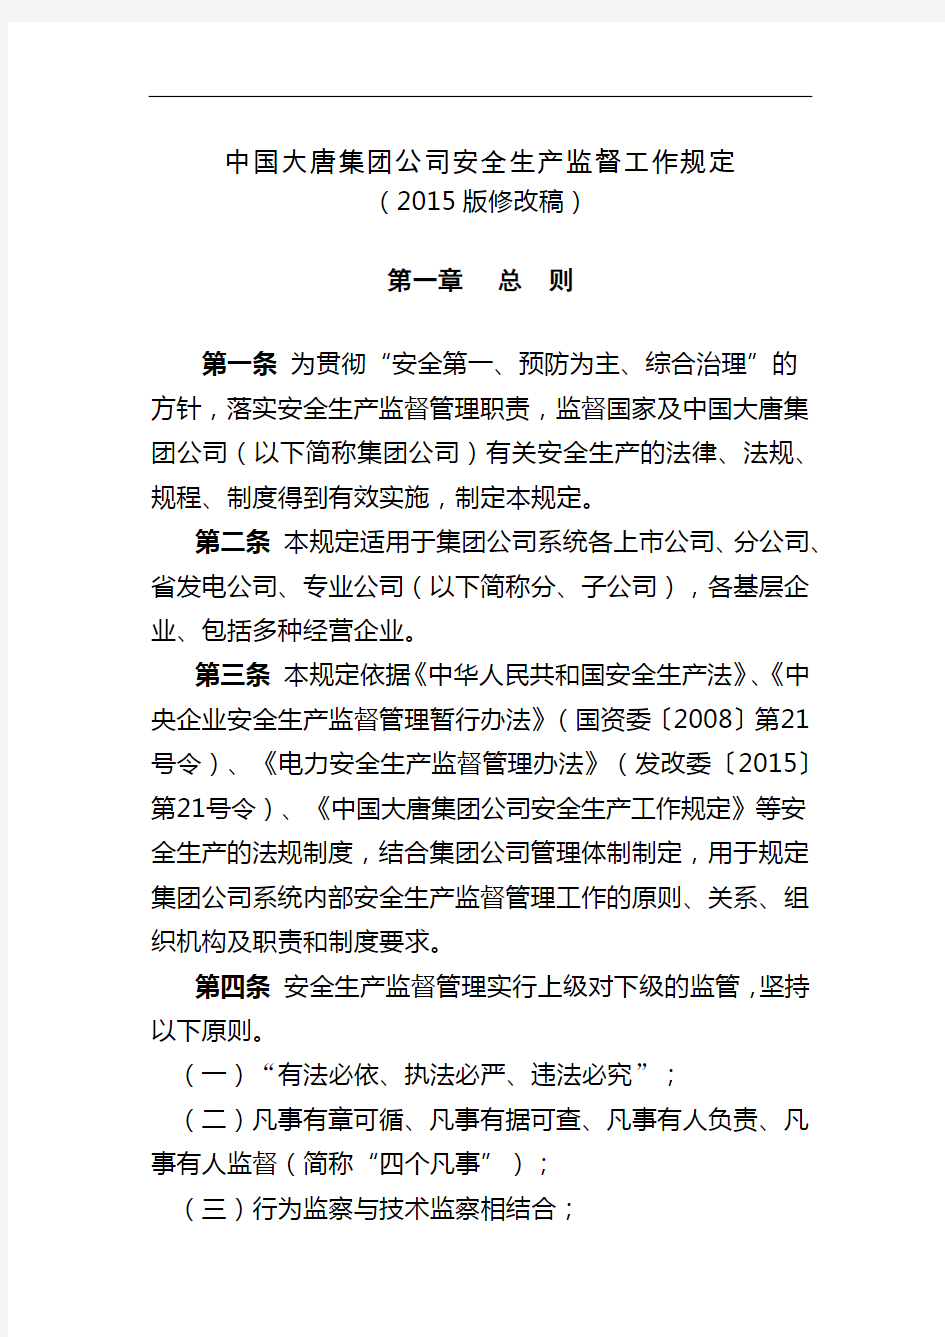 中国大唐集团公司安全生产监督工作规定2015